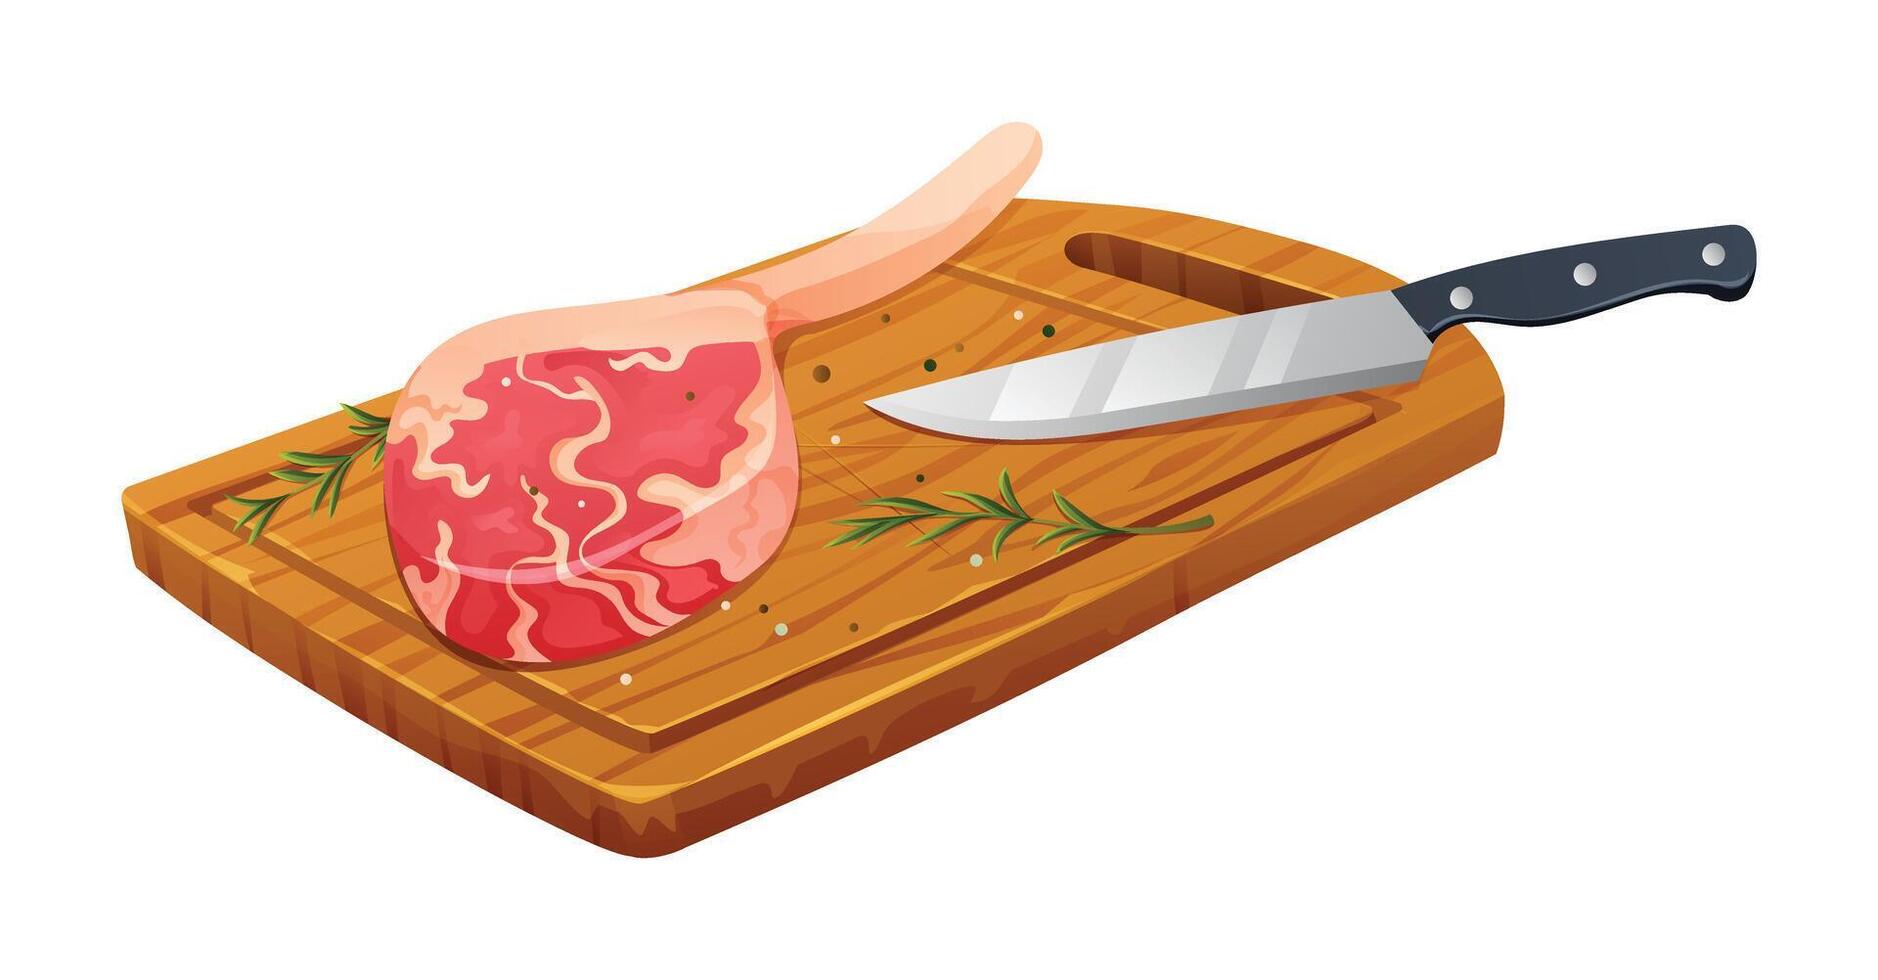 fresco cru tomahawk carne bife com sal, alecrim e faca em corte borda. vetor ilustração isolado em branco fundo